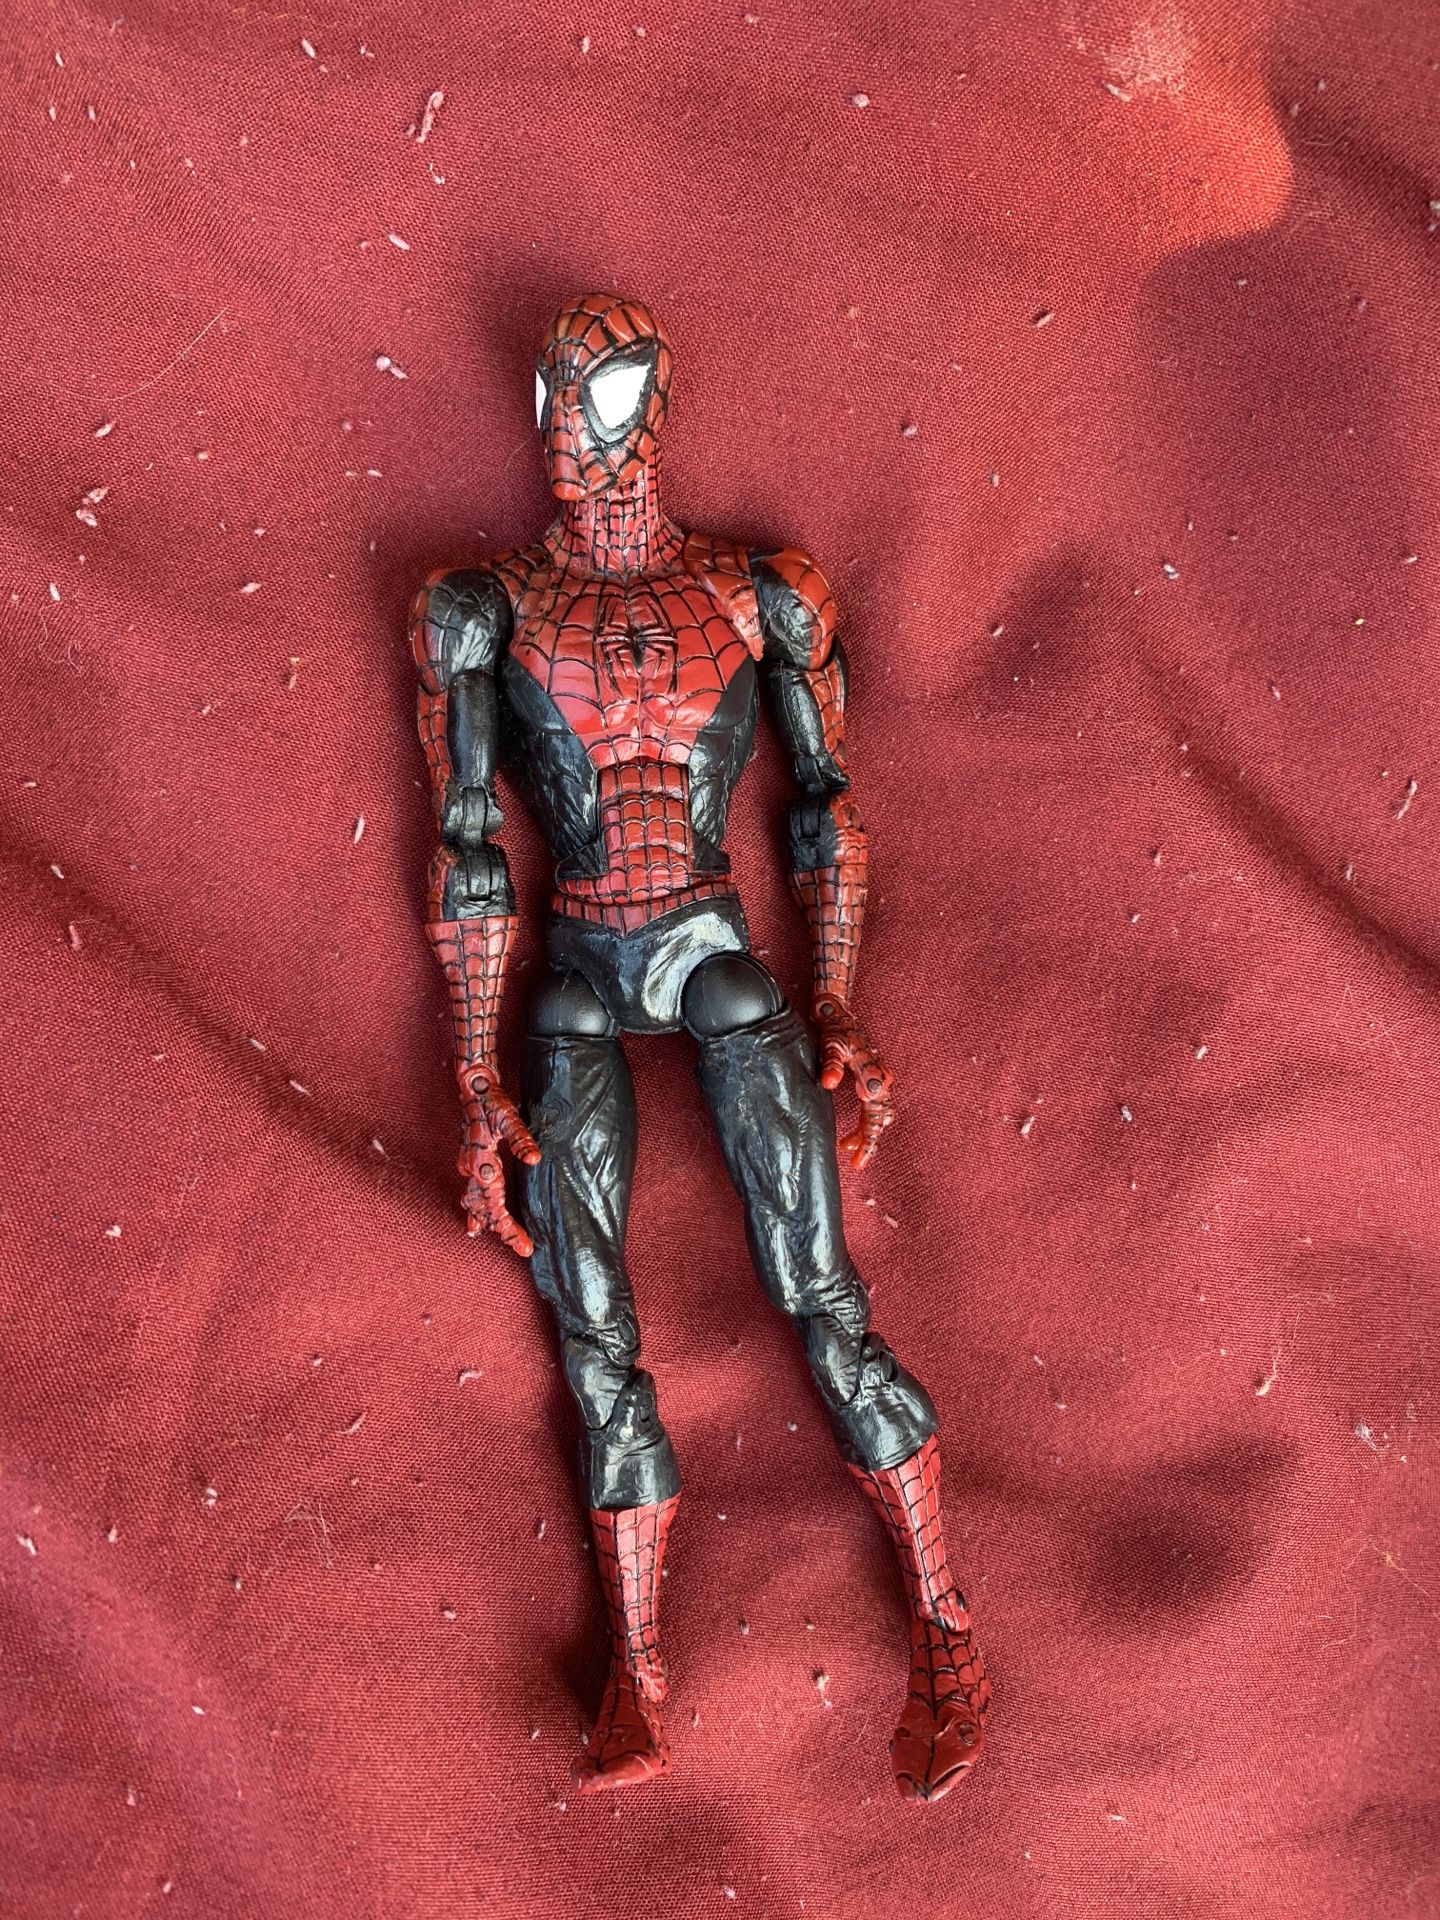 Super possible 6’ figure Mcfarlane Marvel Legends Spider-Man